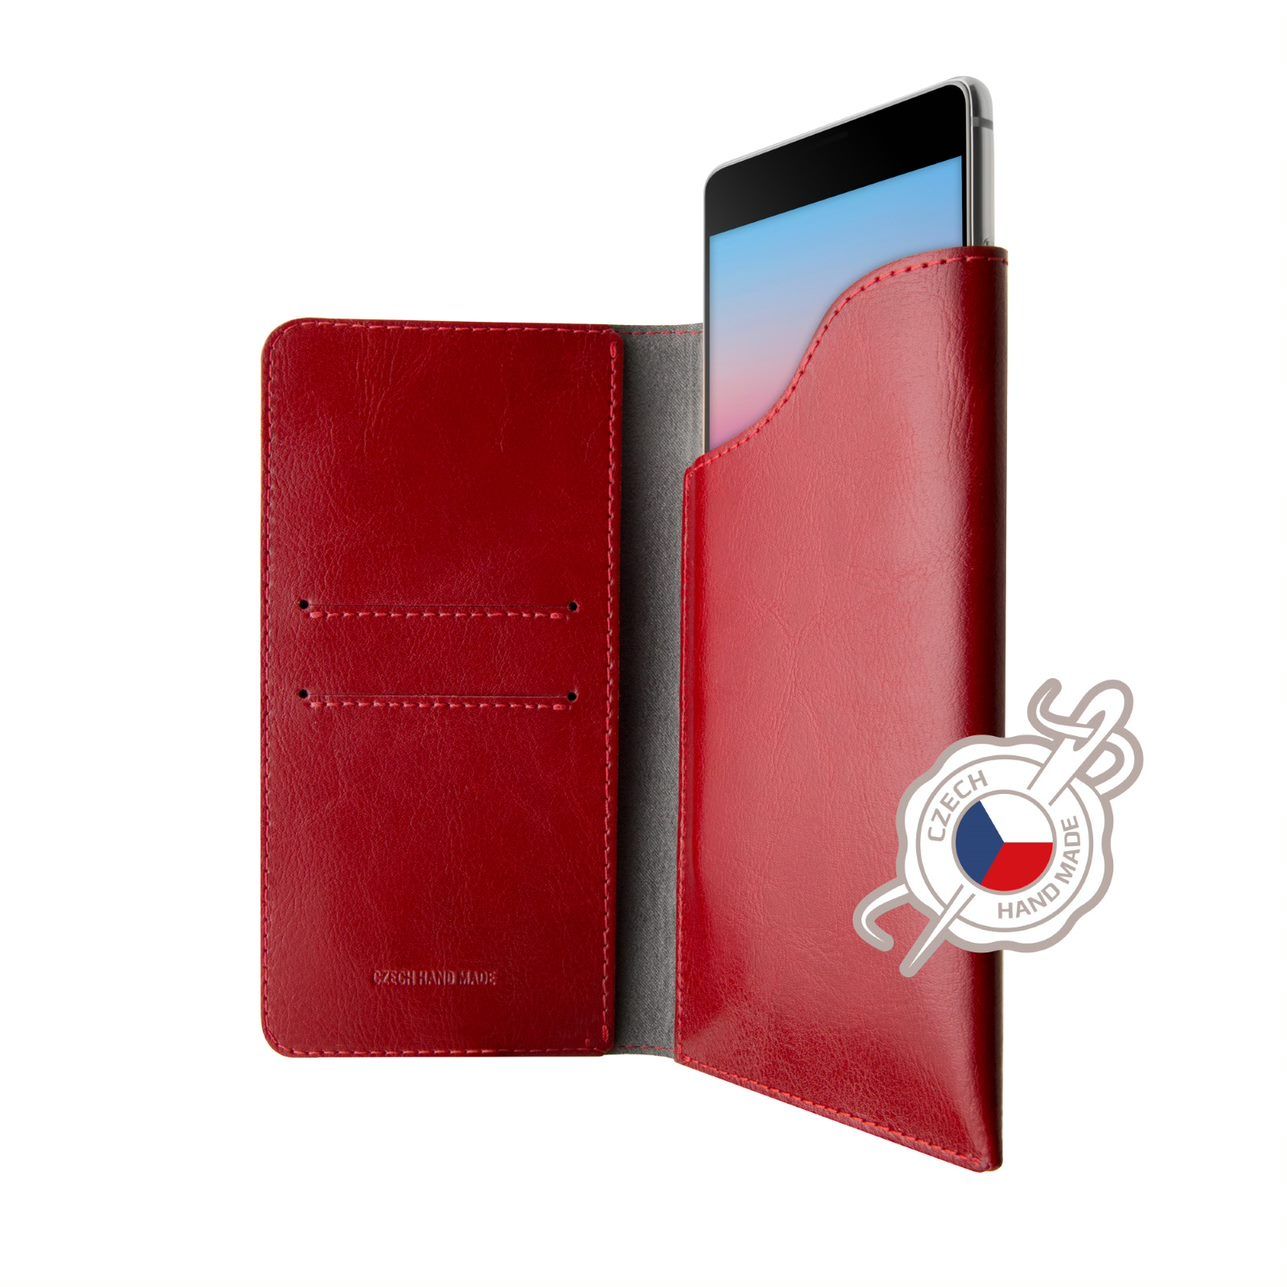 FIXED Pocket Book Kožené pouzdro pro Apple iPhone XR/11, červená